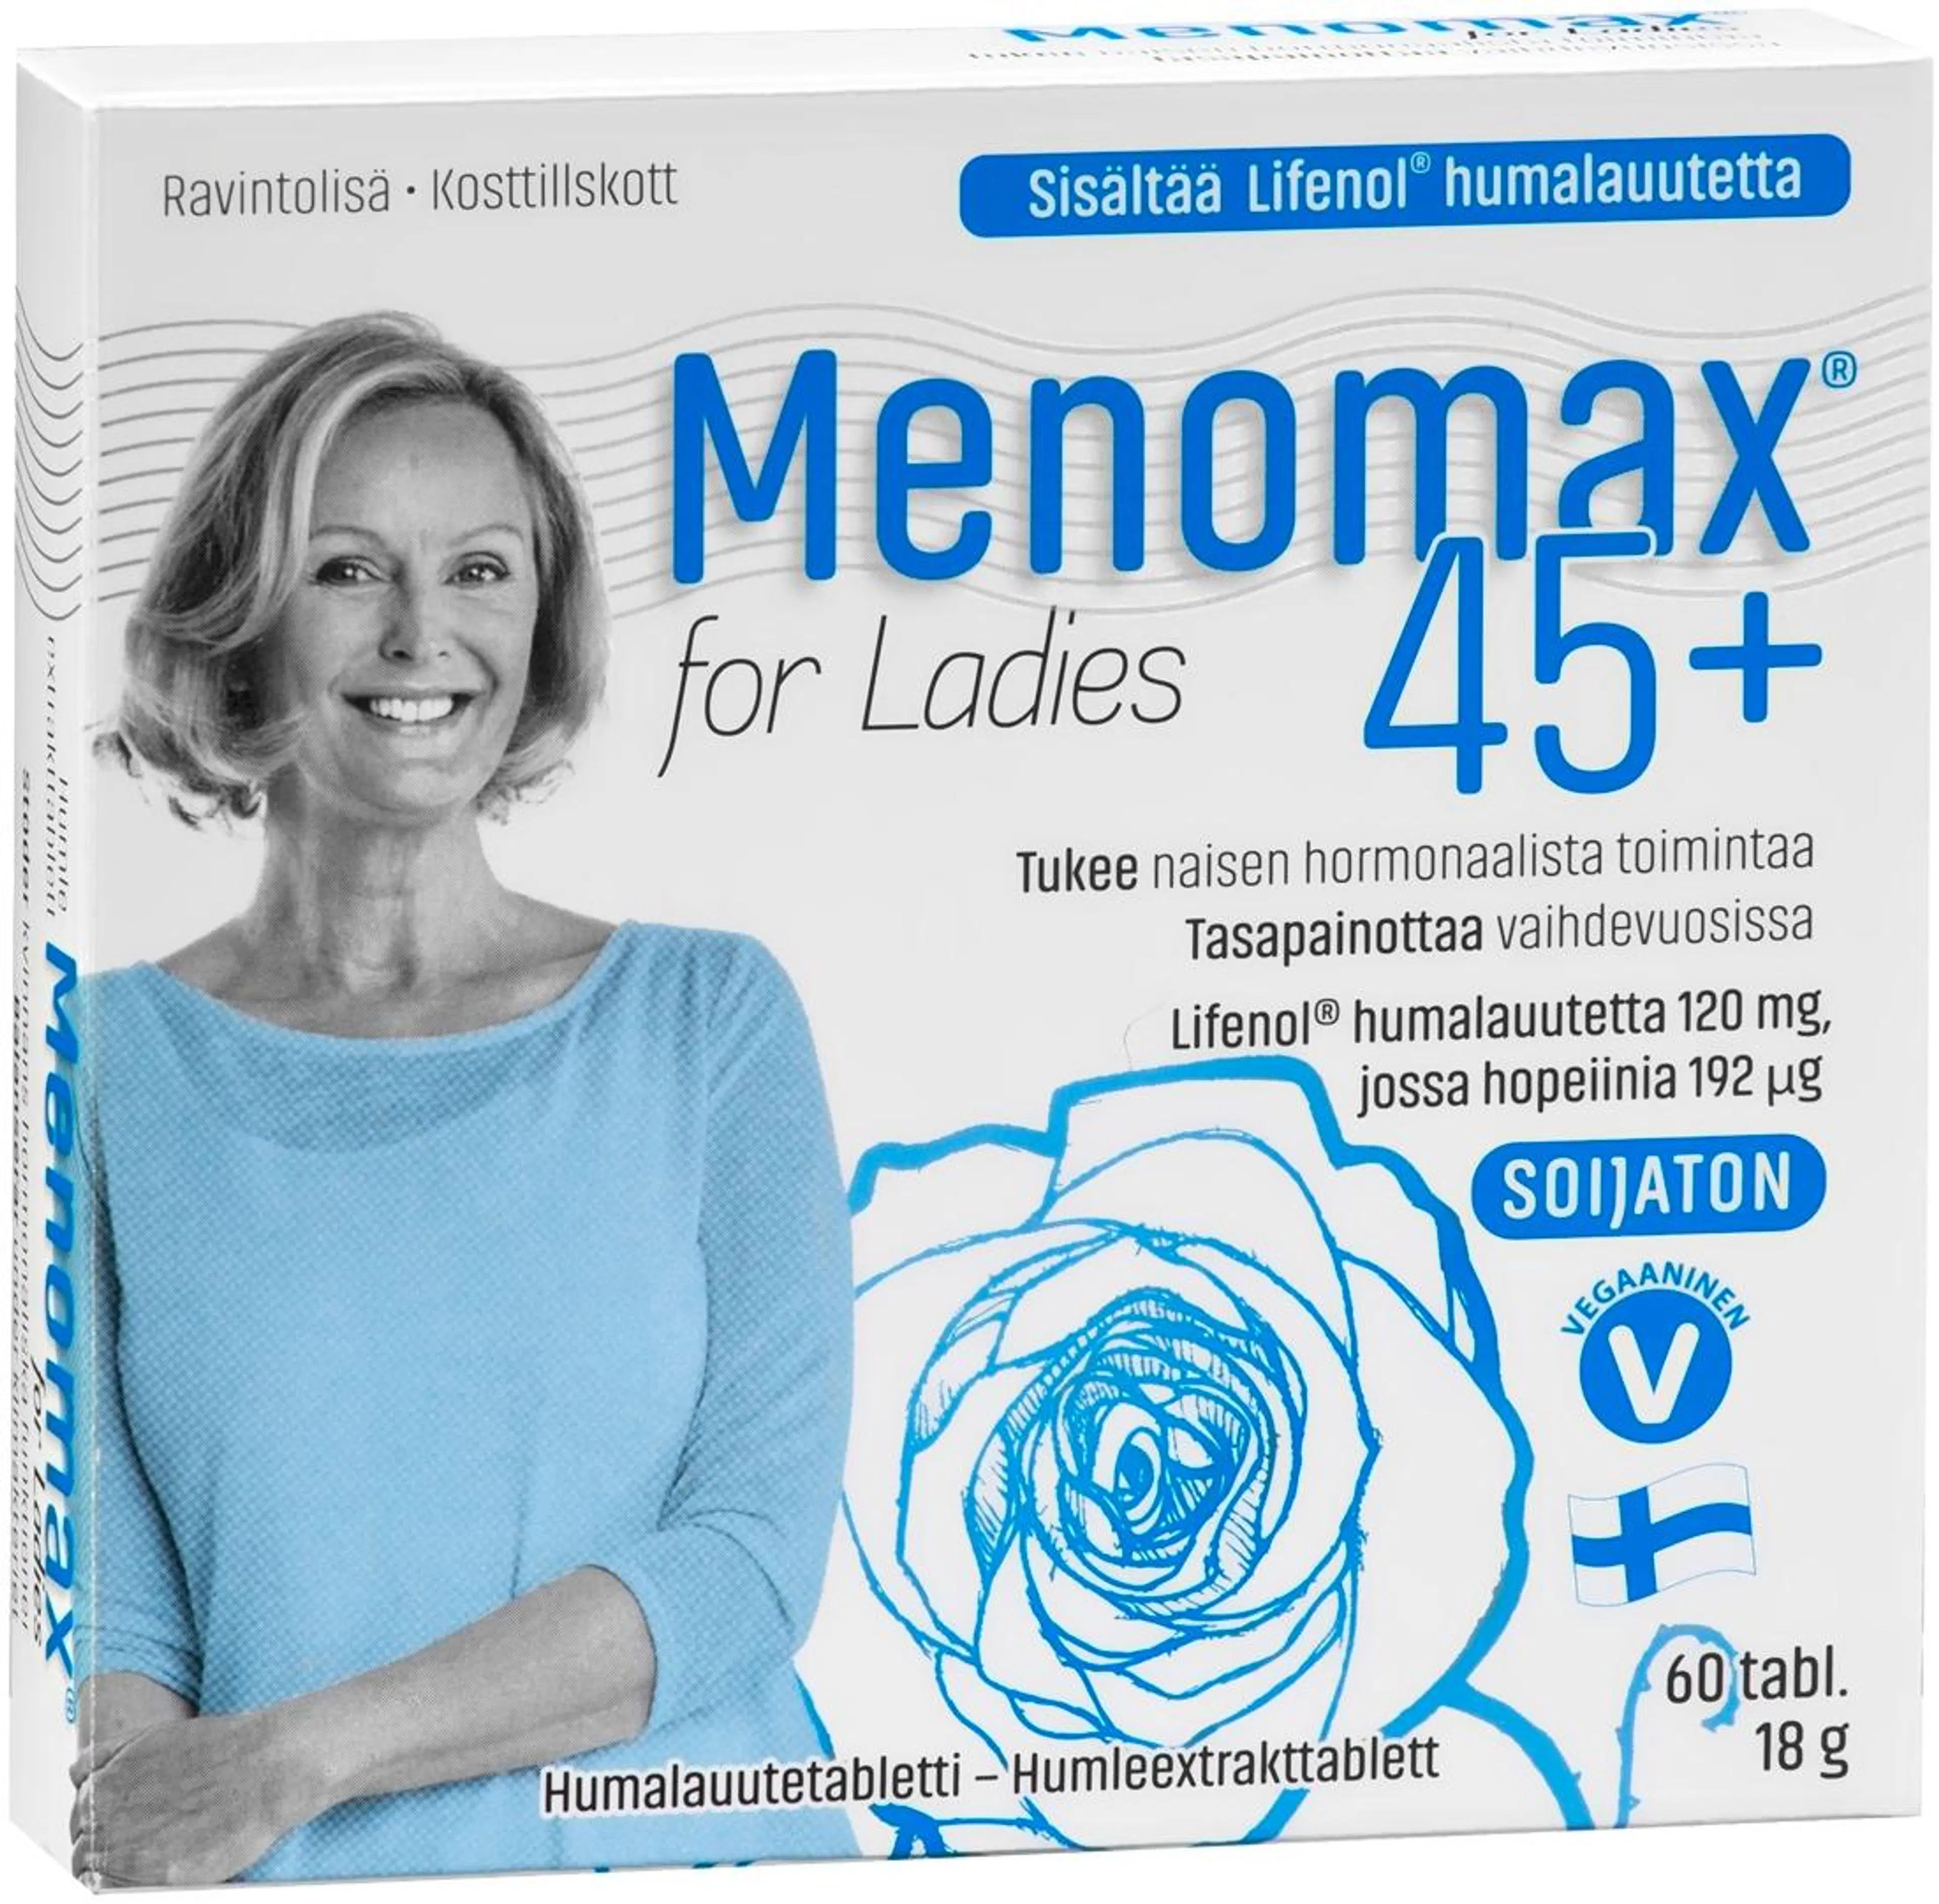 Menomax for Ladies humalauutetabletti 60 tabl